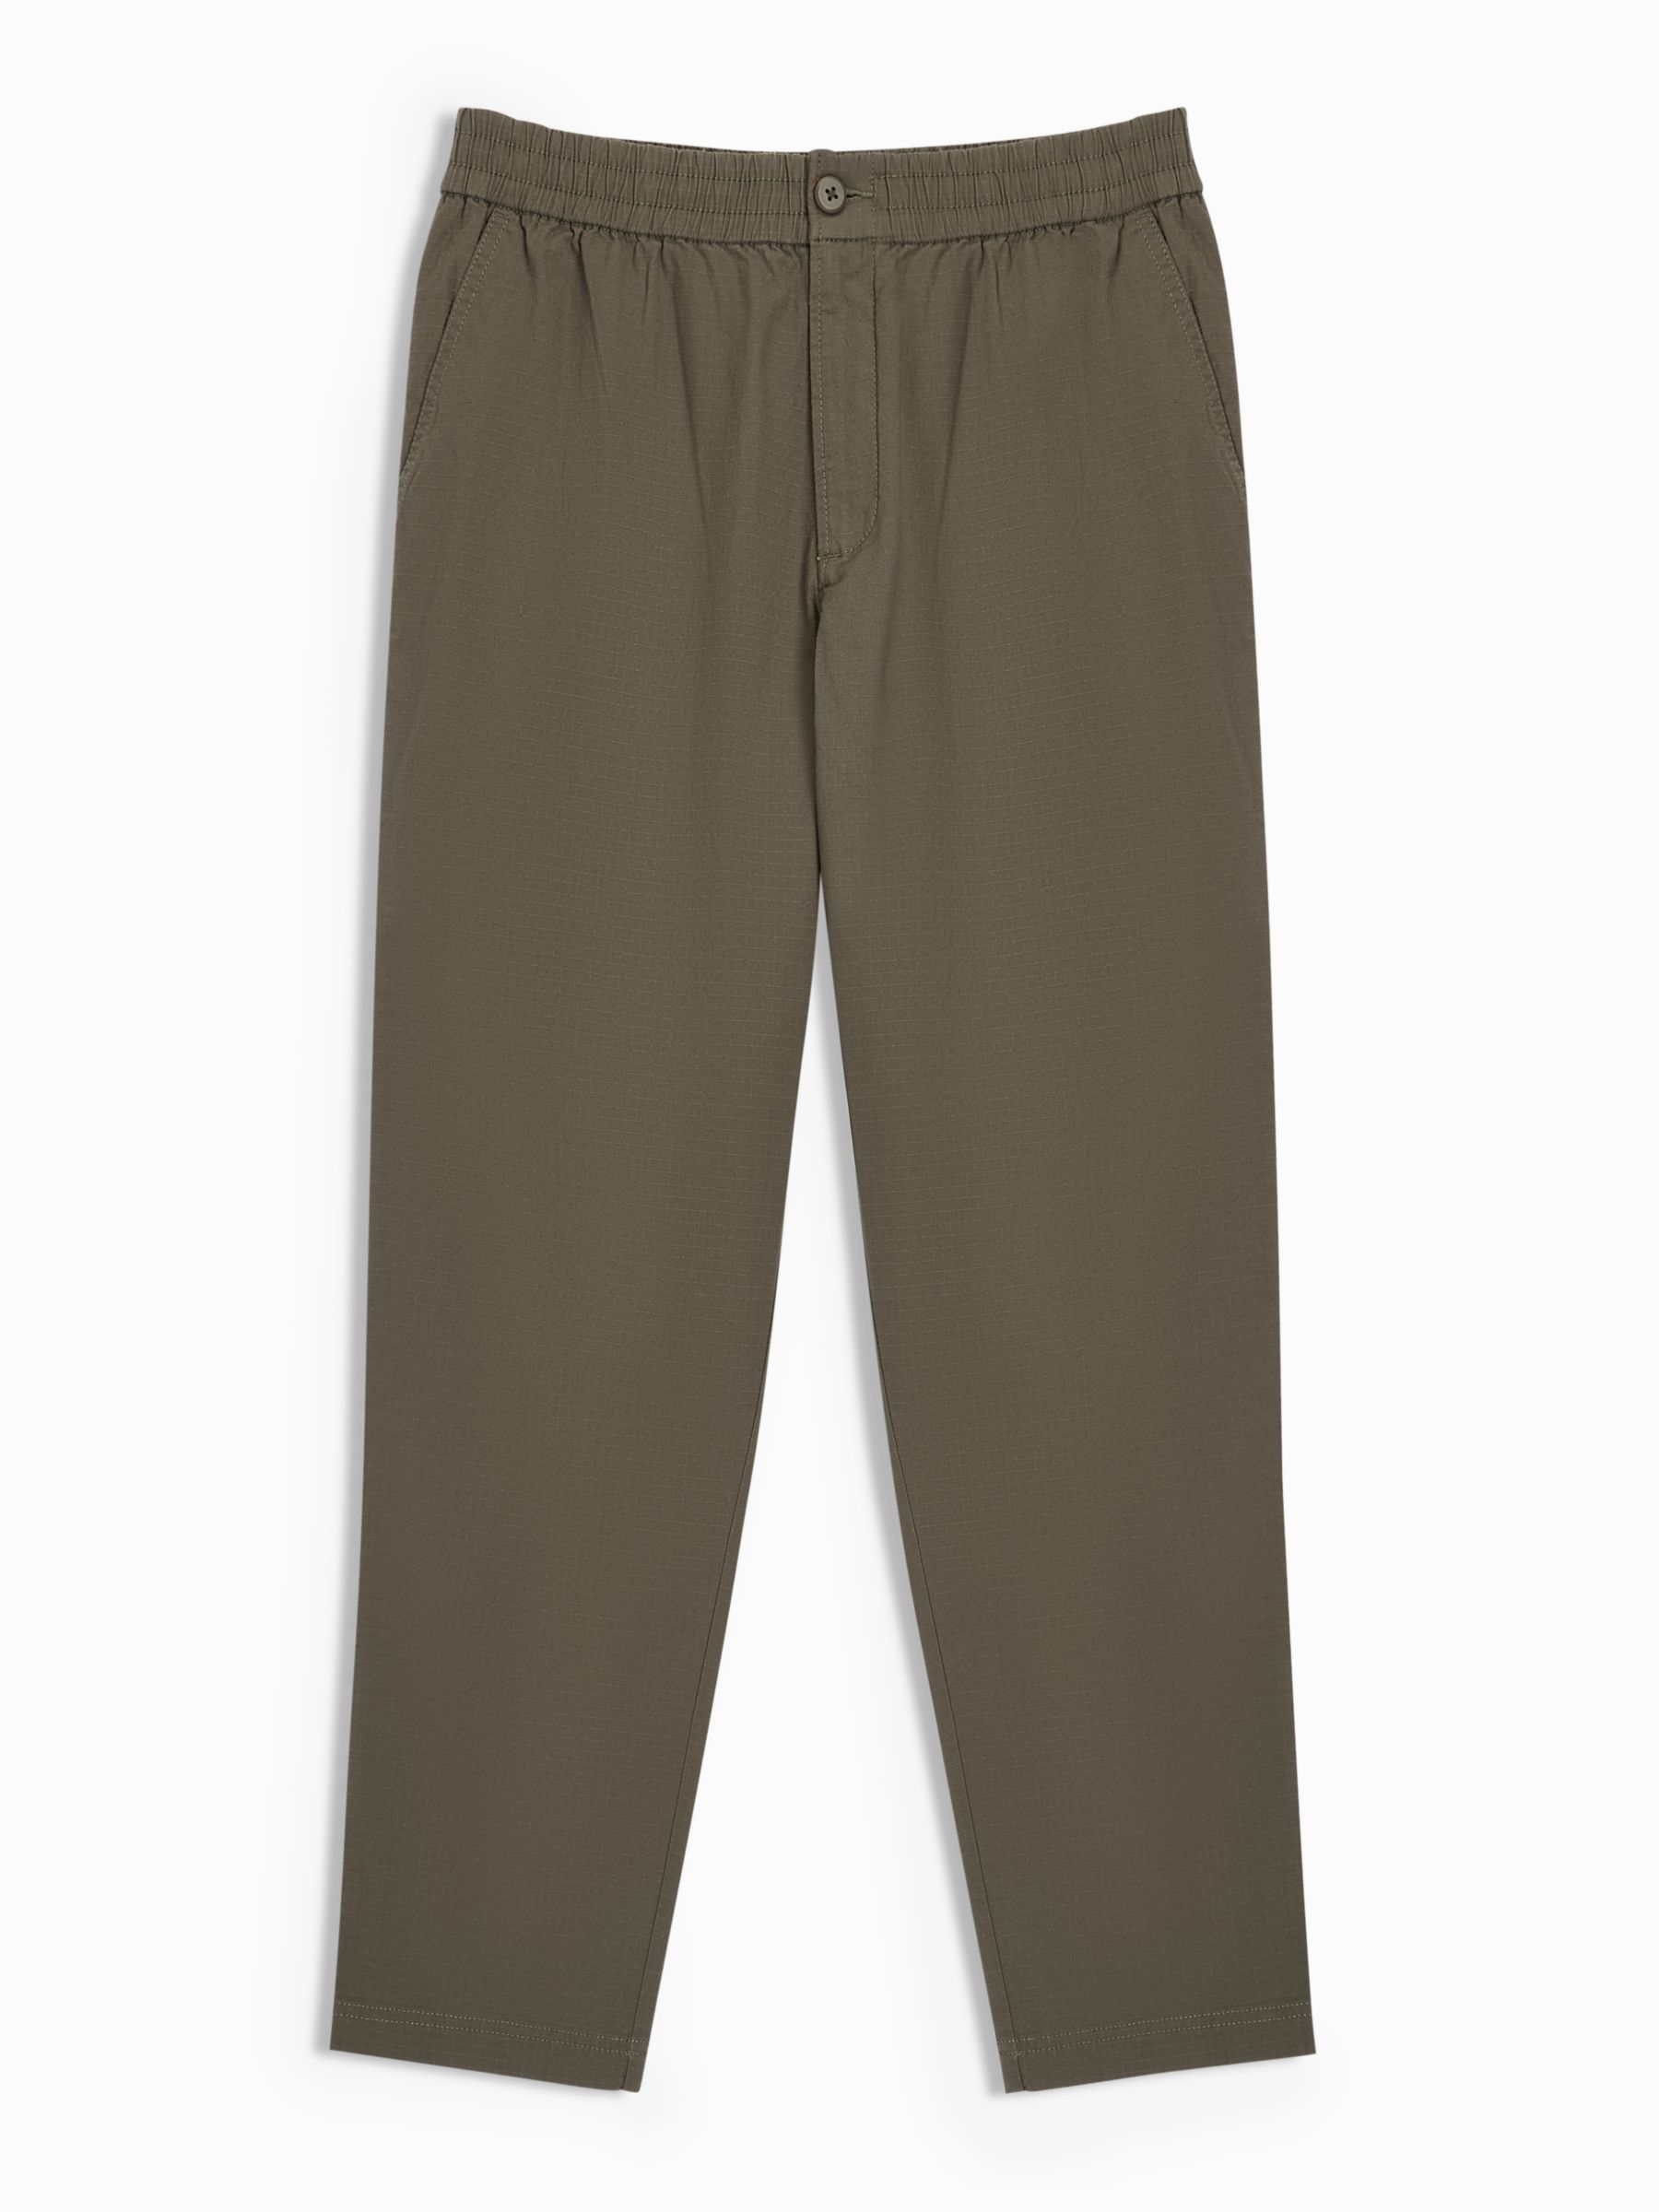 Uniqlo Men Smart Comfort Cotton Ankle Length Trousers (Beige, Large)